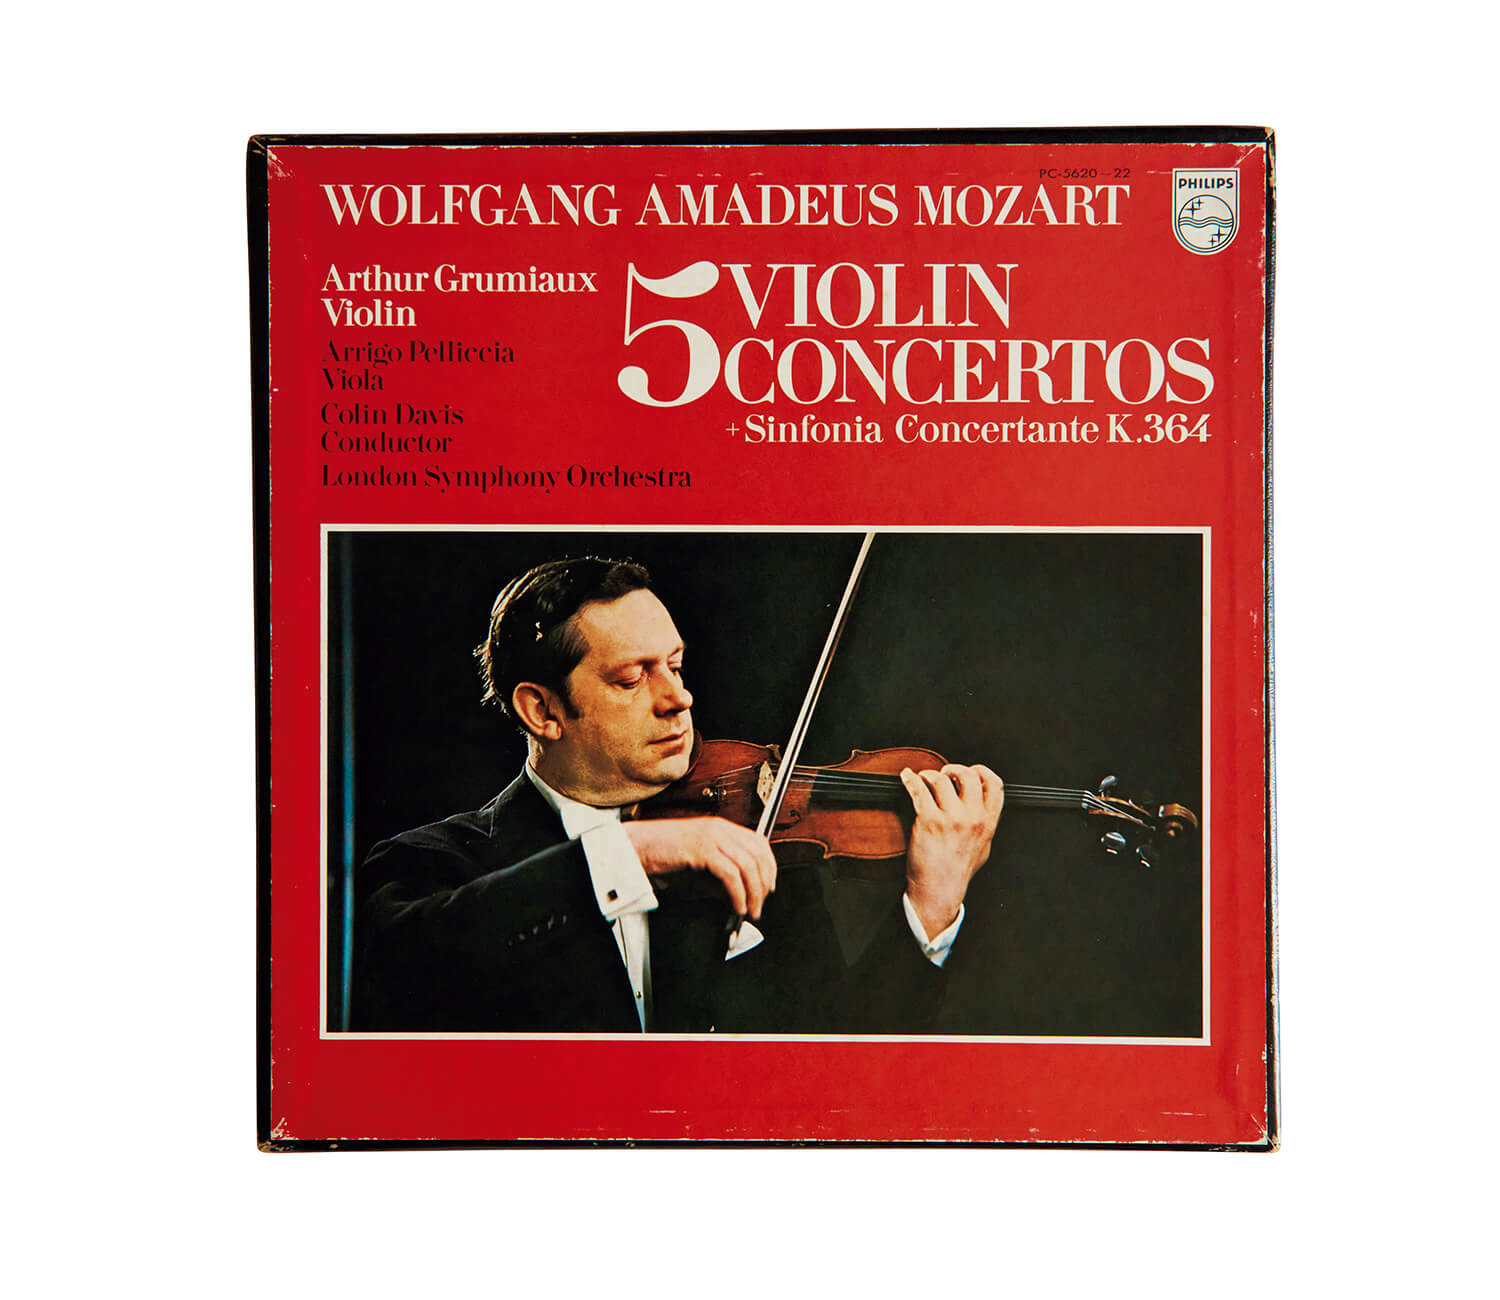 アルトゥール・グリューミオが演奏した、モーツァルト「ヴァイオリン協奏曲第5番 イ長調」レコードジャケット